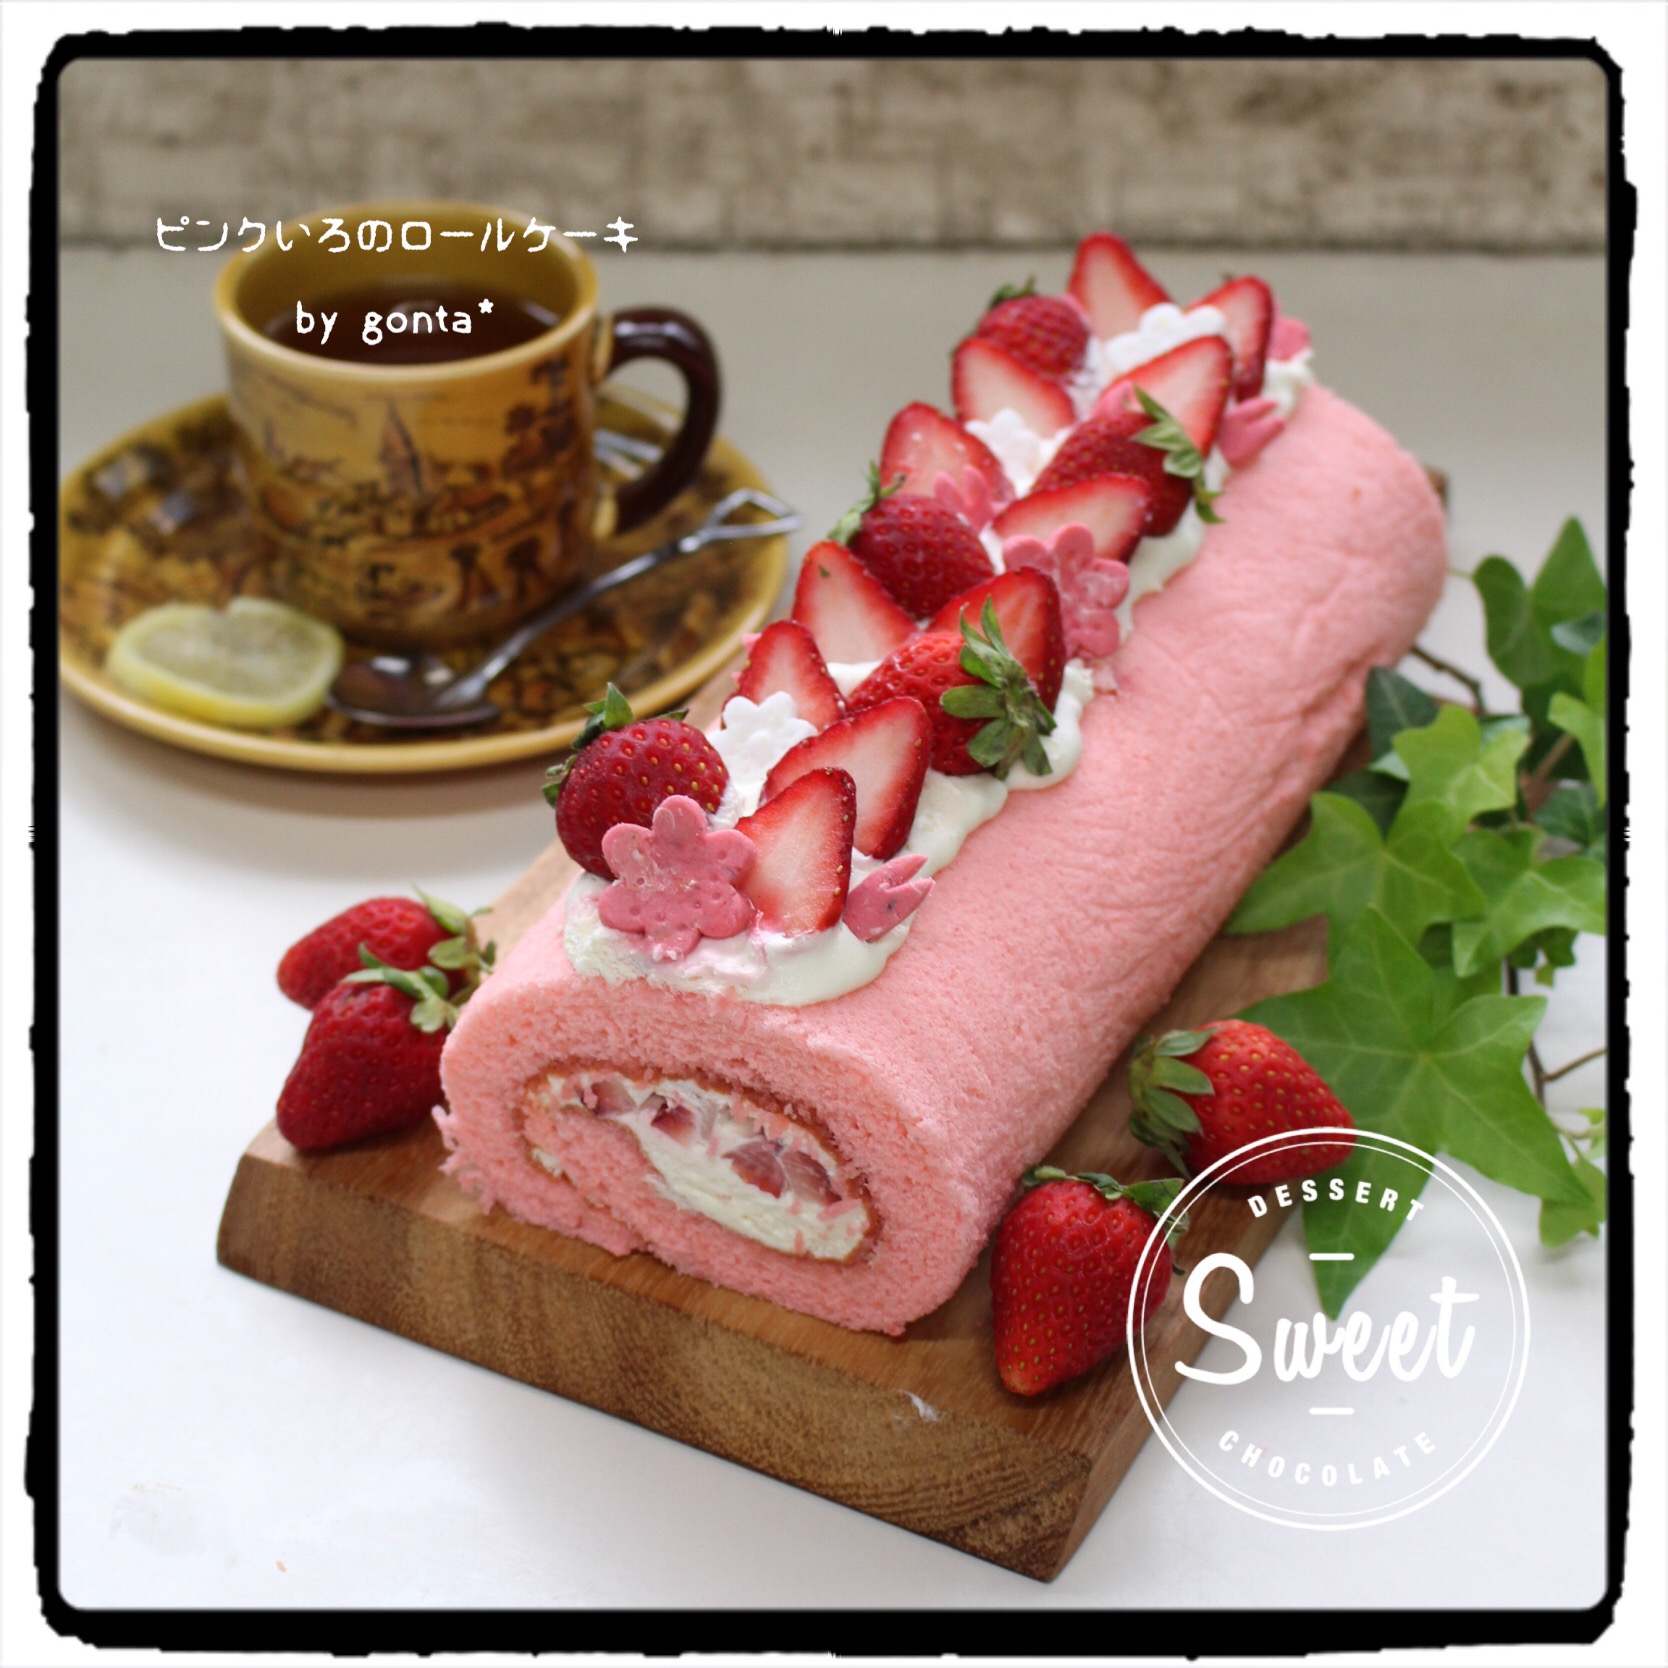 ピンク色のロールケーキ お花見パーティーグランプリ18 ヤマサ醤油株式会社